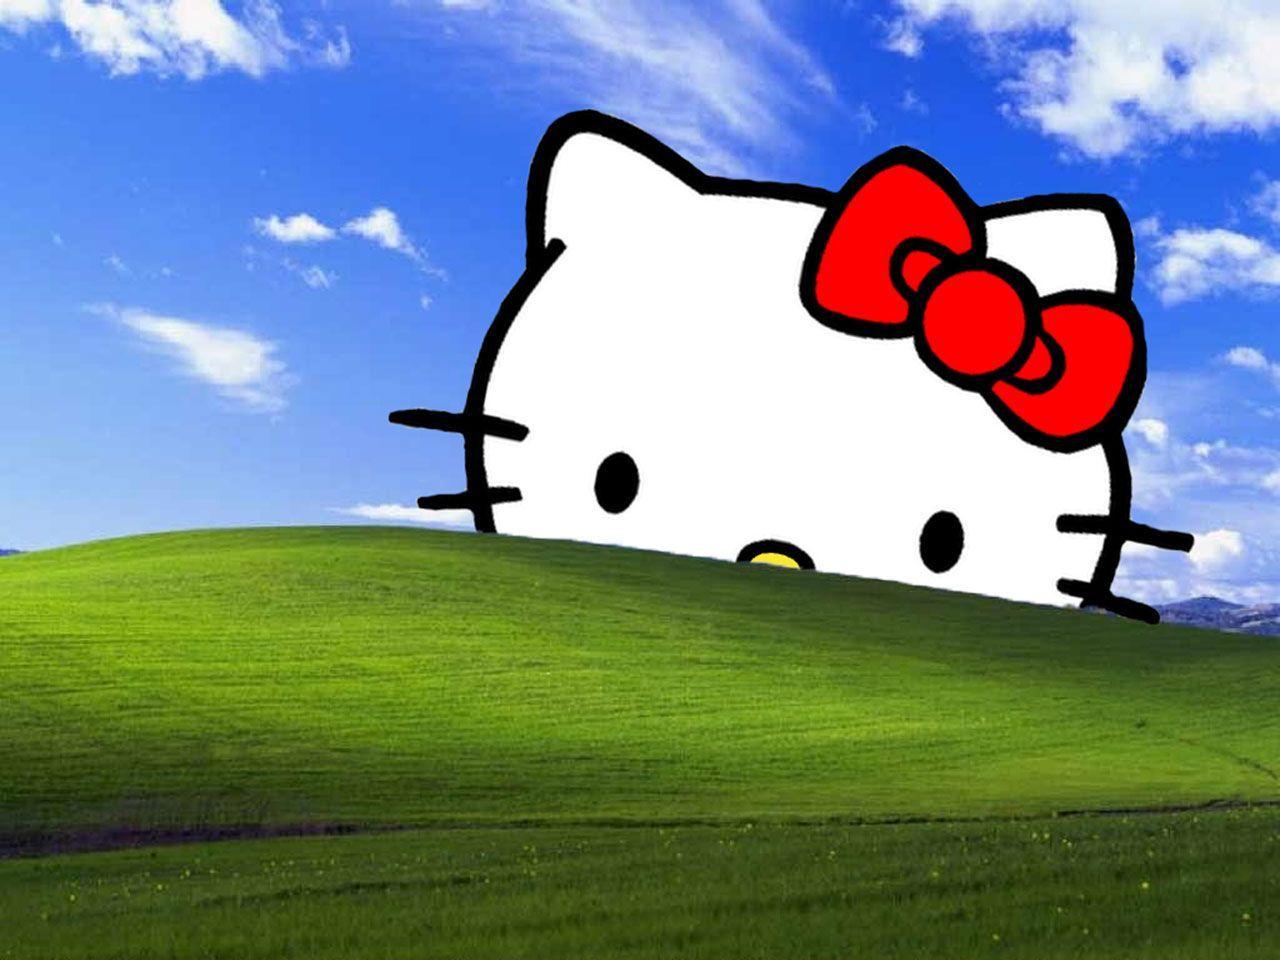 Bạn muốn tìm kiếm một mẫu hình nền Hello Kitty dễ thương và phù hợp cho chiếc laptop yêu quý của mình? Bộ sưu tập hình nền Hello Kitty này sẽ khiến bạn hài lòng với những hình ảnh đáng yêu, trẻ trung và tươi sáng, tạo nên sự tươi mới và cuốn hút cho màn hình Laptop của bạn.